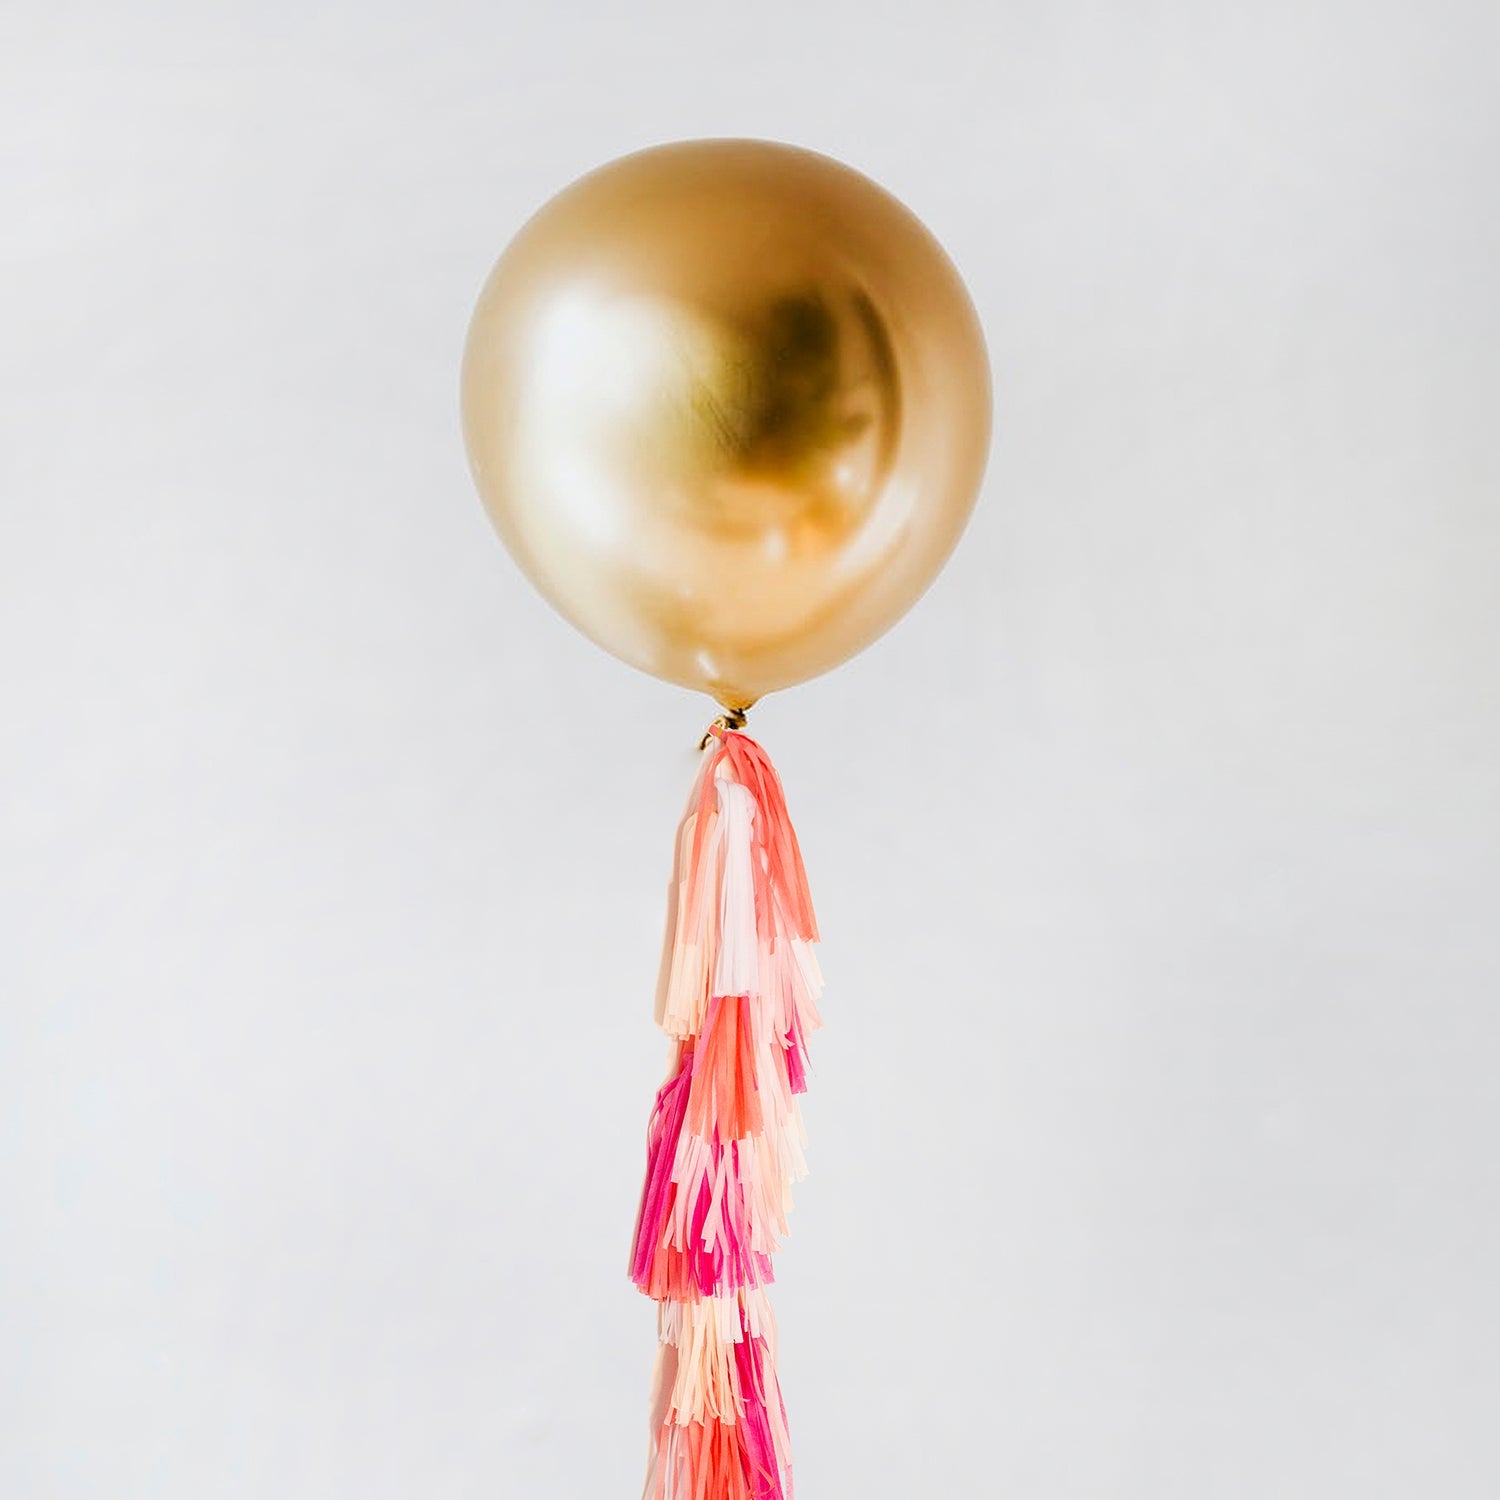 Jumbo Balloon & Tassel Tail